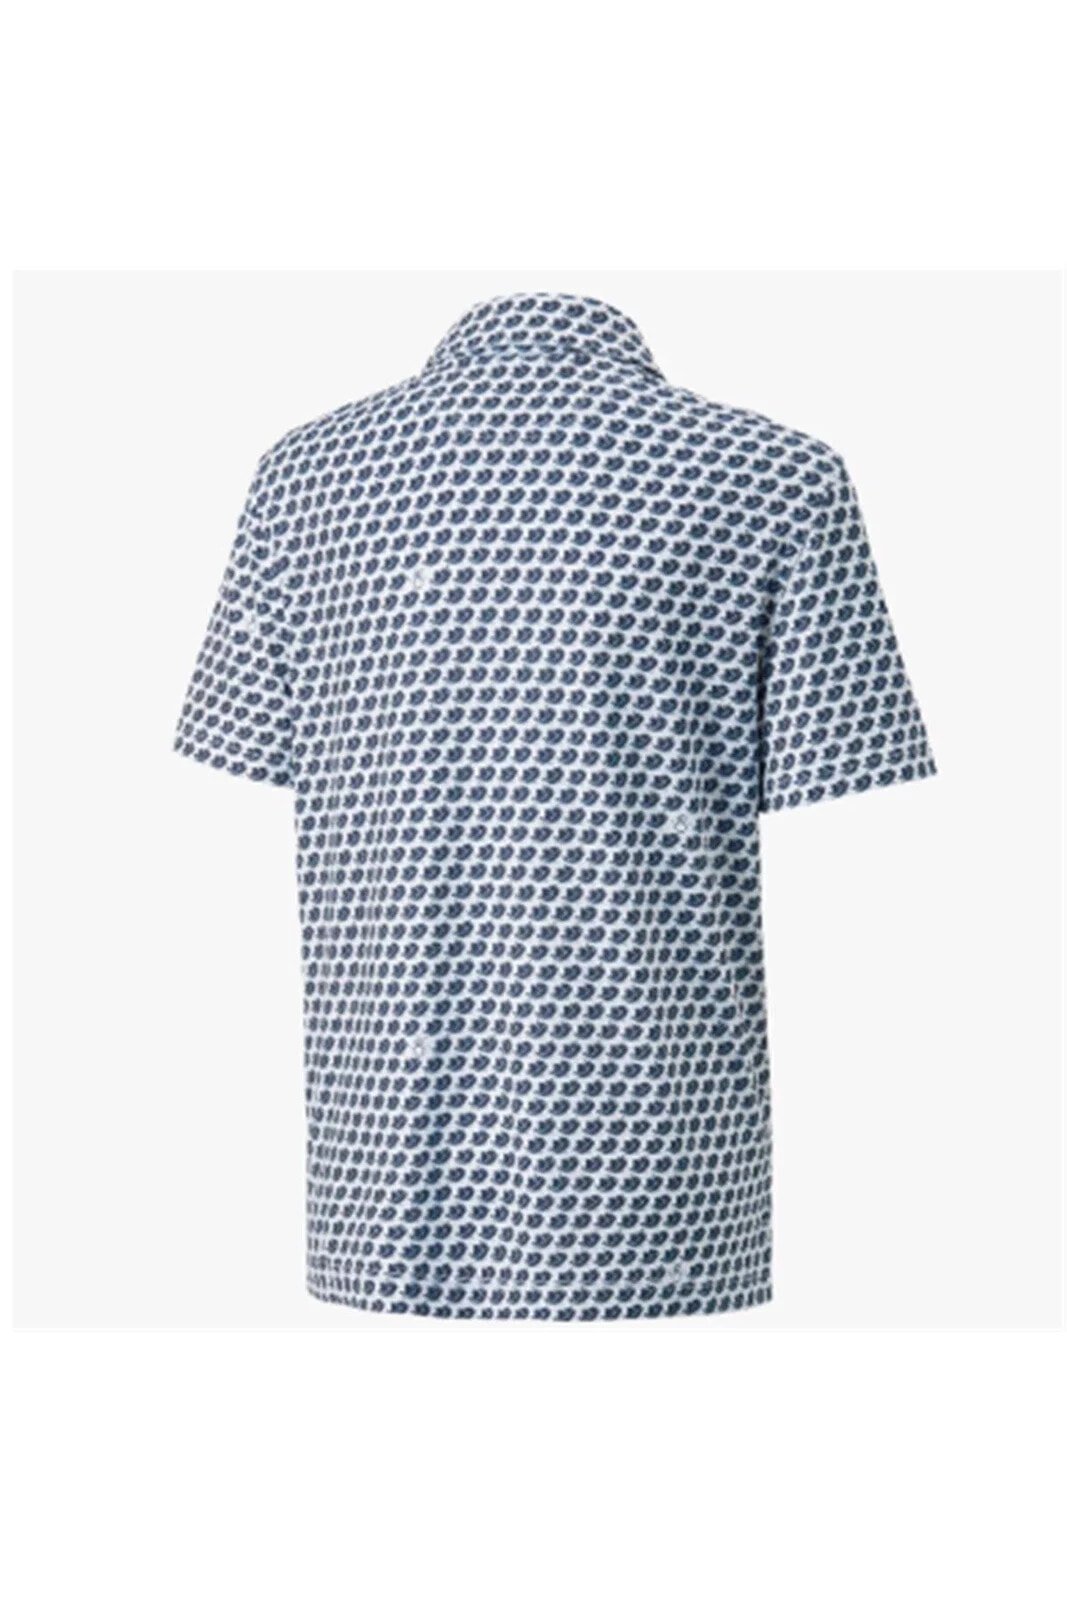 Mattr Love H8 Golf Tshirt - Erkek Tişört